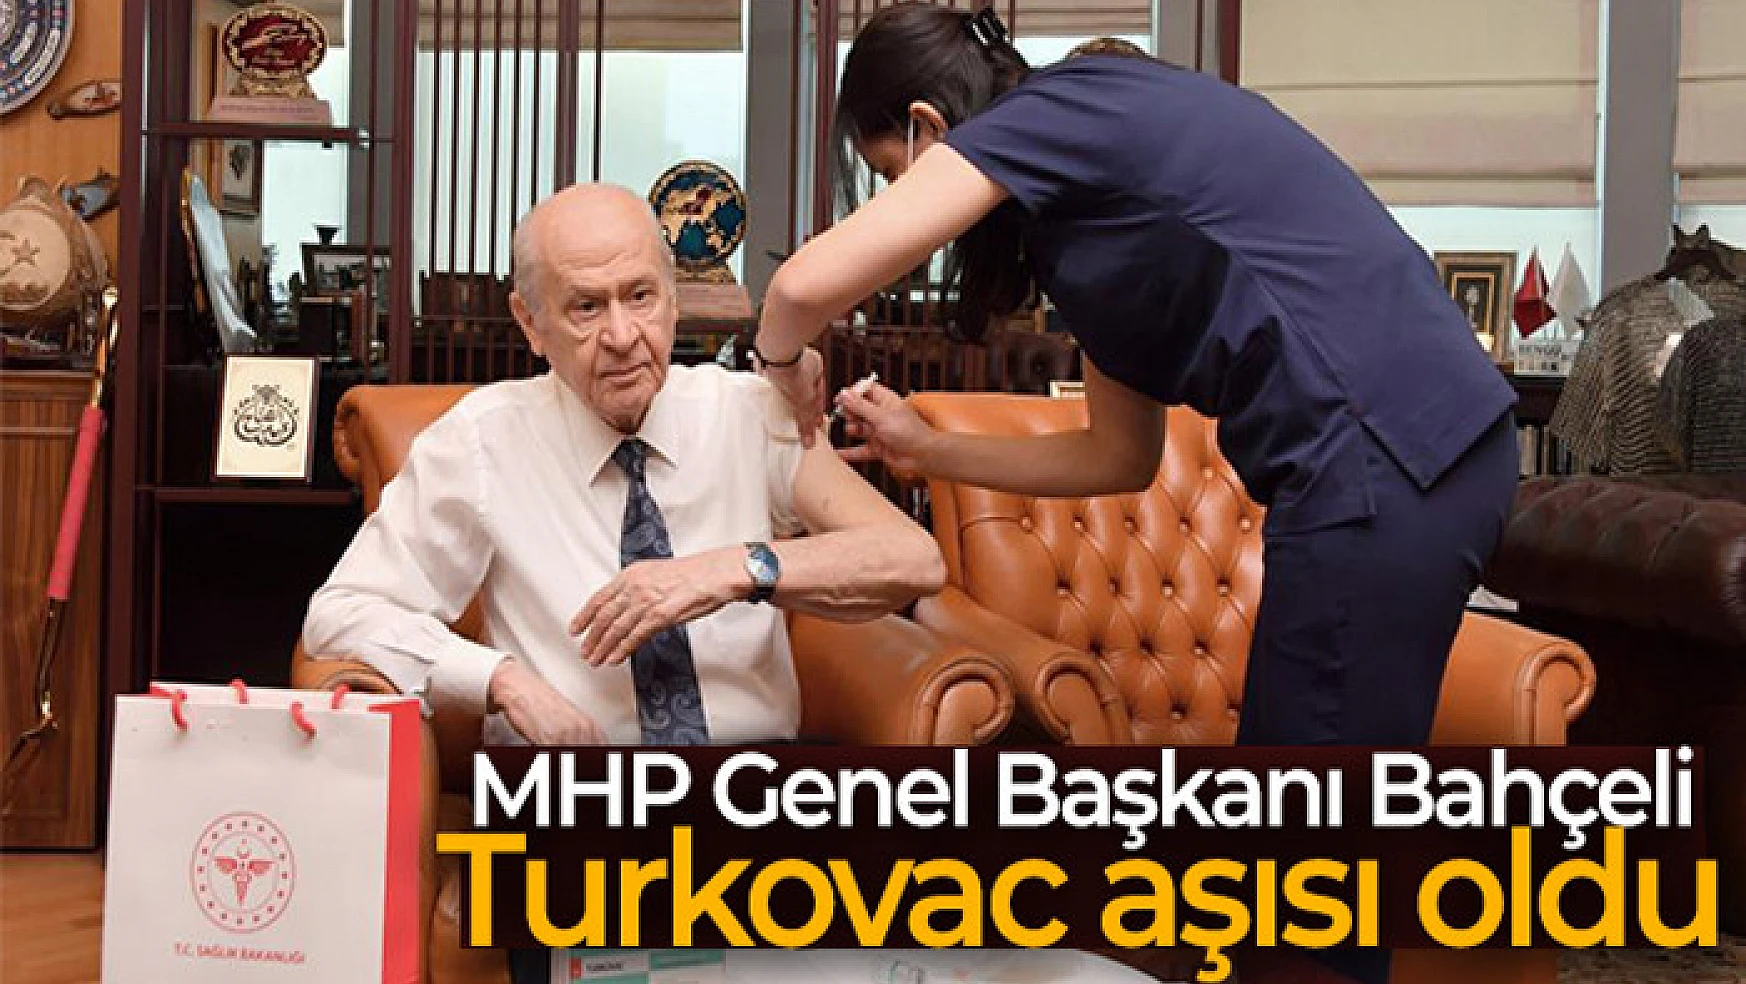 MHP Genel Başkanı Bahçeli, Turkovac aşısı oldu